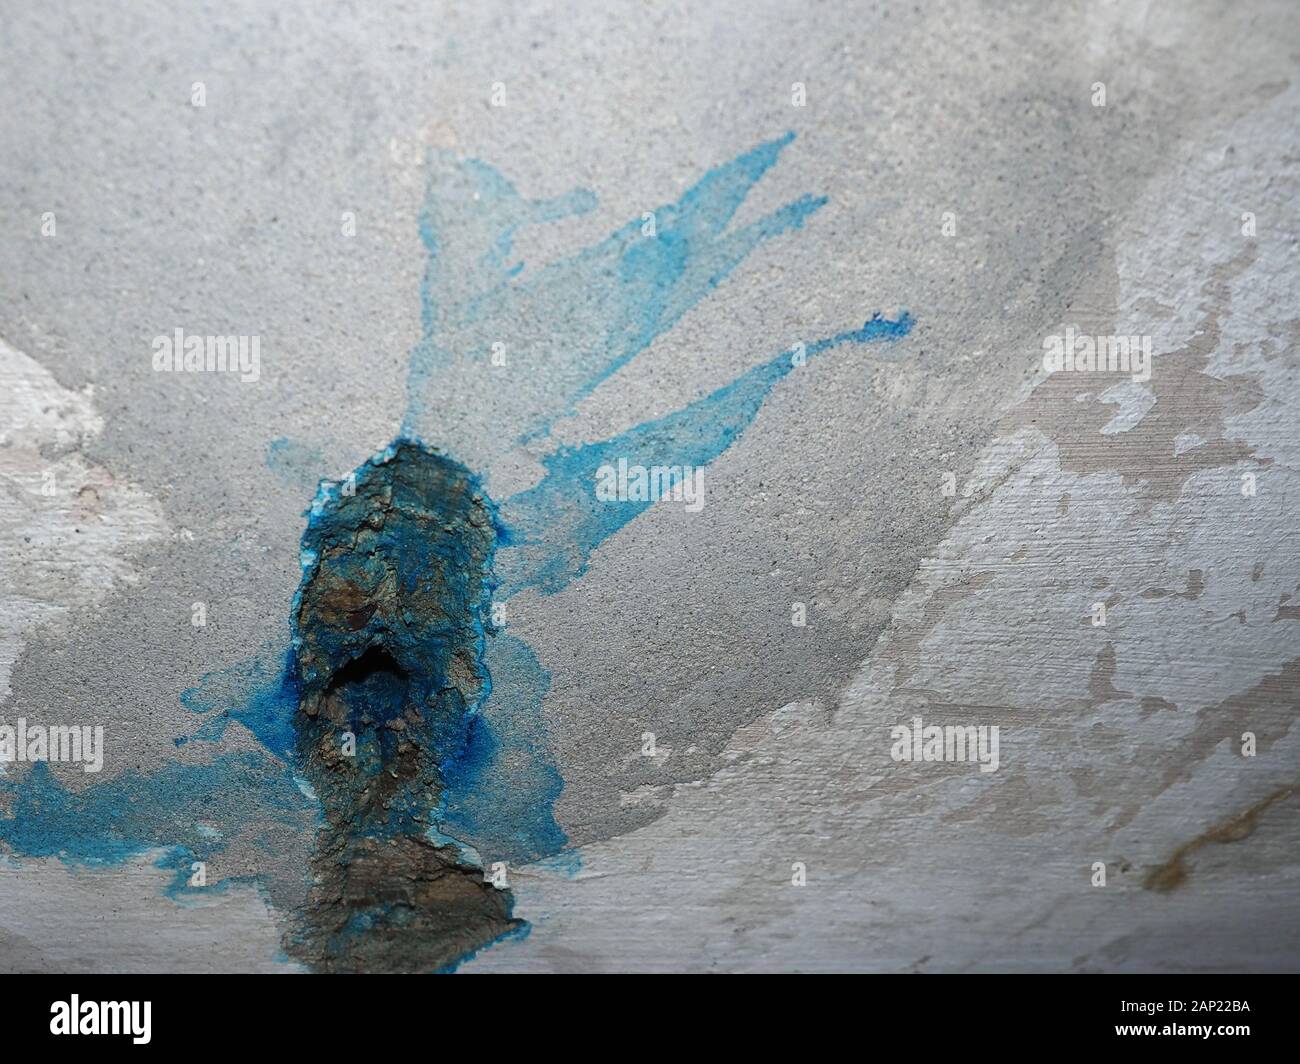 Blue il fluido cercaperdite per trovare le infiltrazioni di acqua nei muri Foto Stock